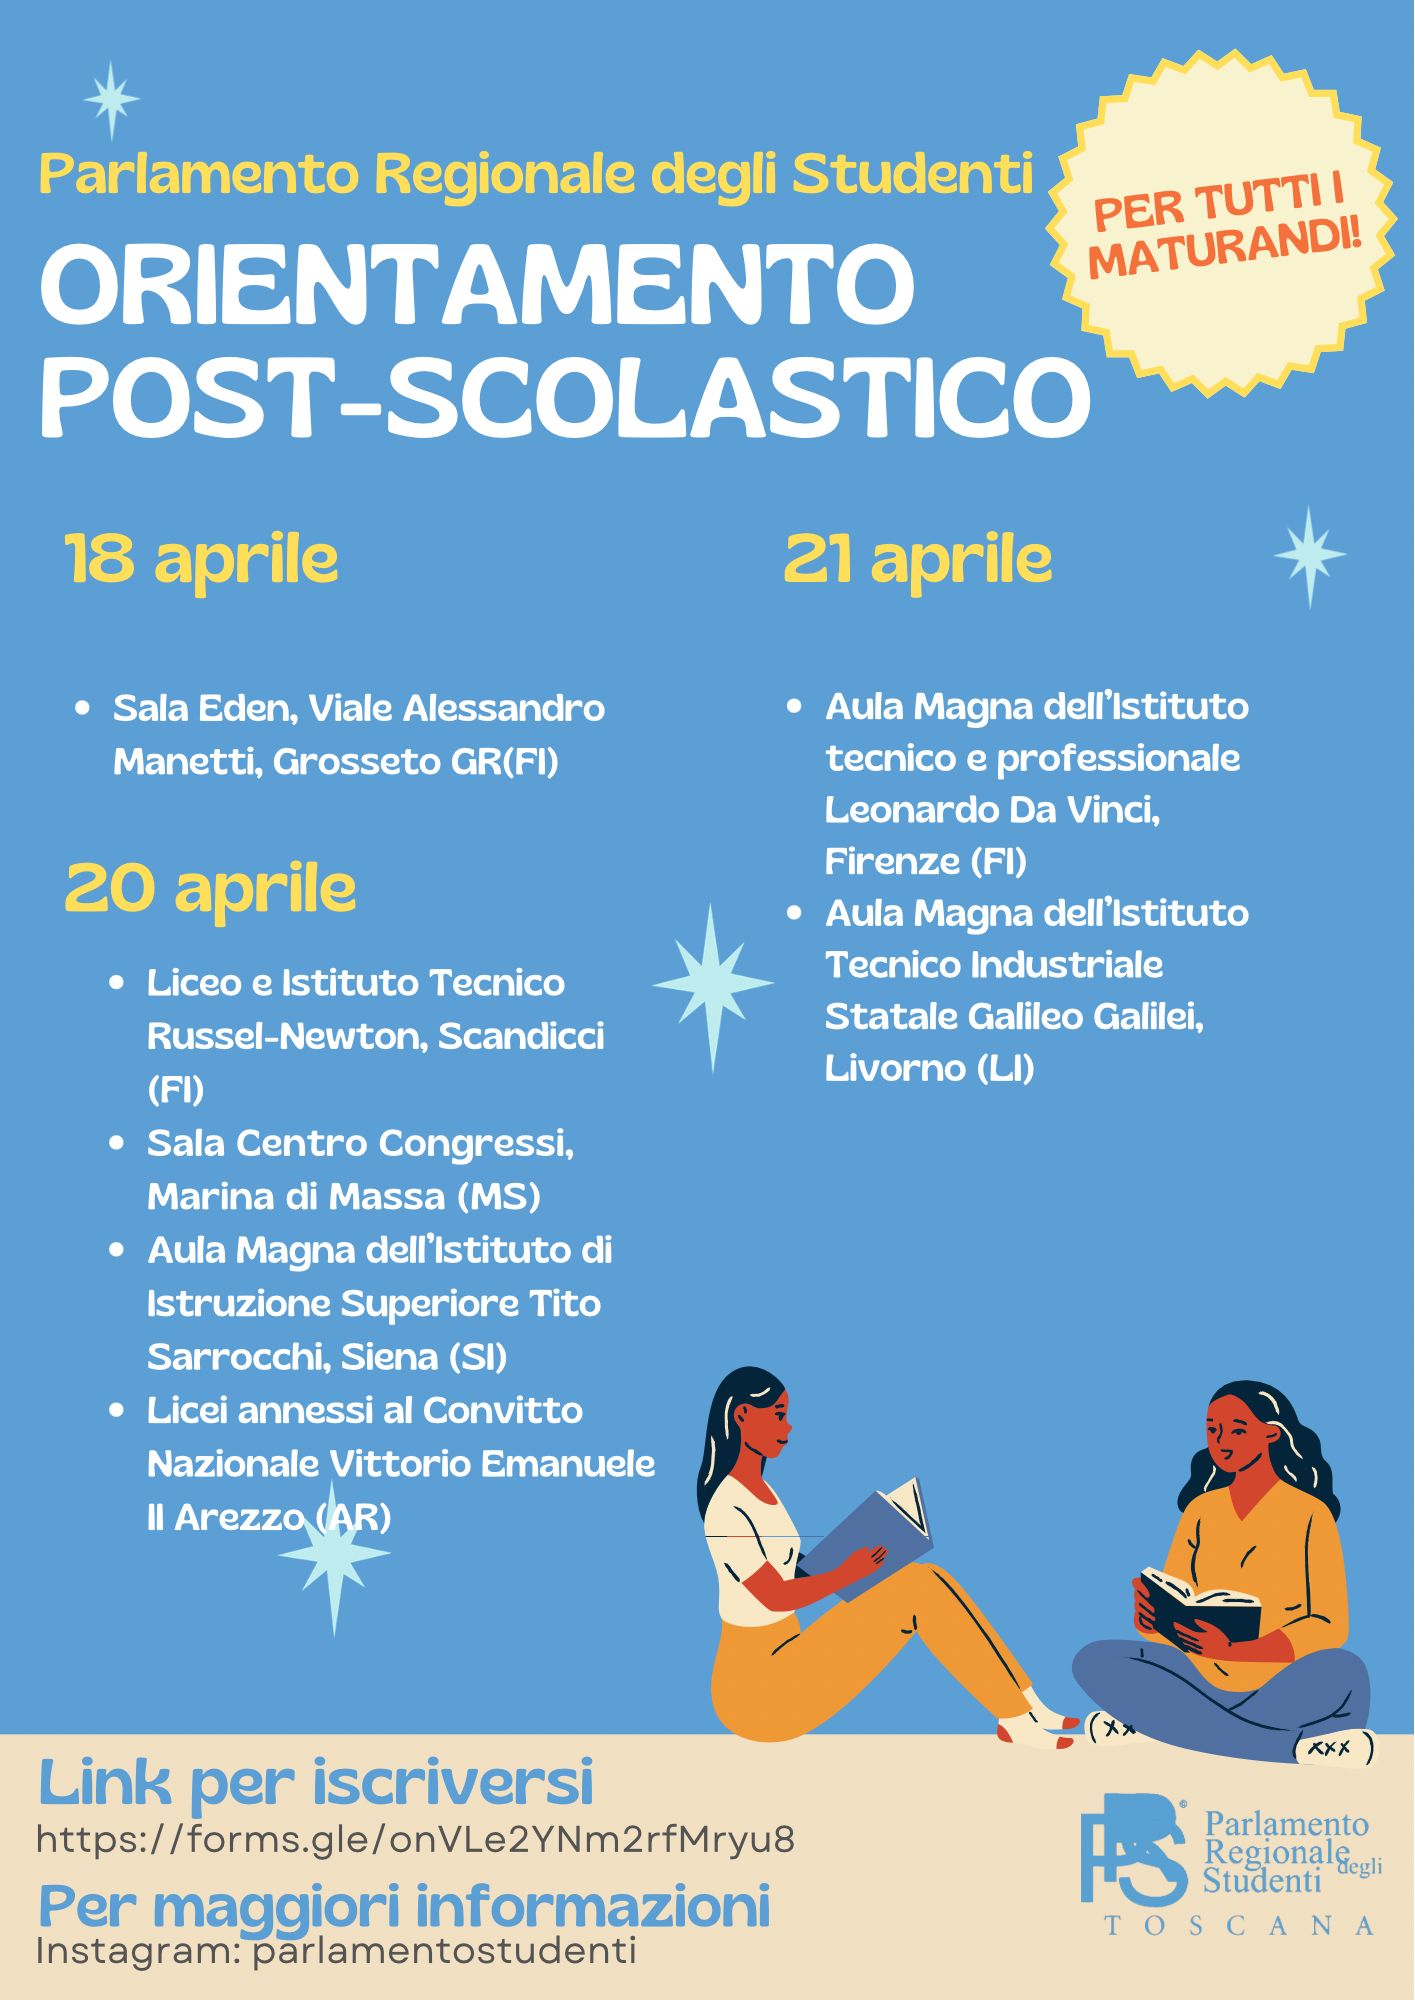 Volantino Evento PRST Orientamento Post-scolastico e Universitario Parlamento Regionale degli Studenti della Toscana.JPG